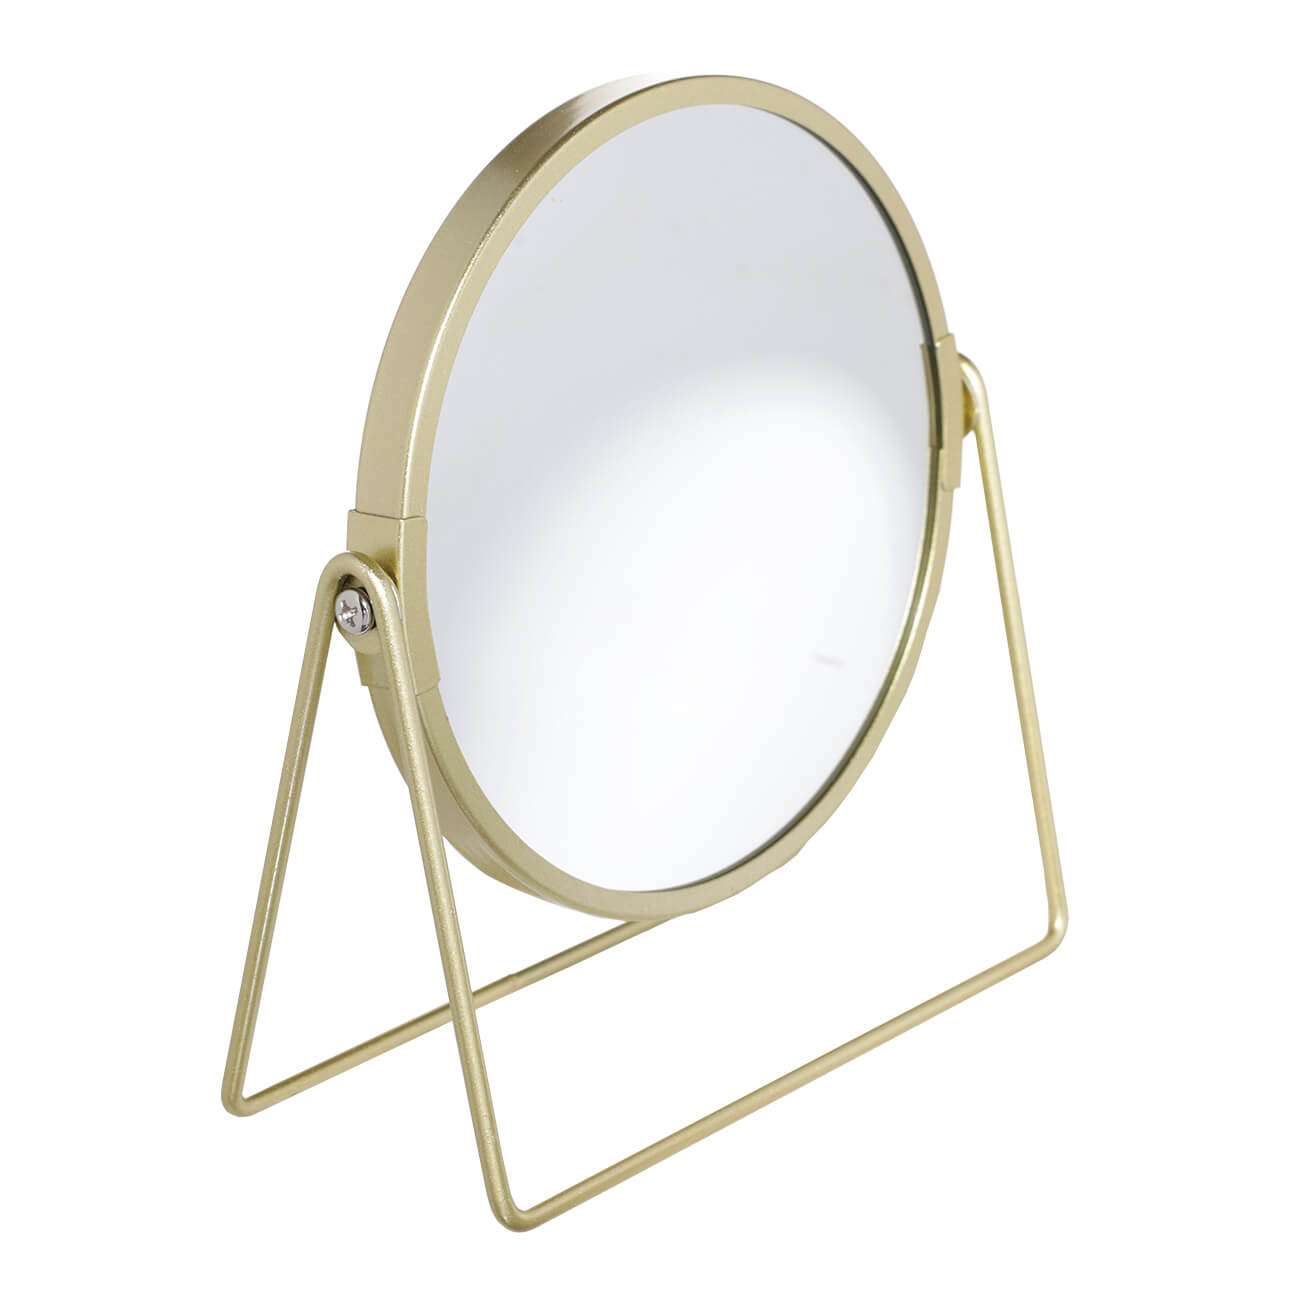 Зеркало настольное, 18 см, двустороннее, металл, круглое, золотистое, Freya зеркало настольное 18 см двустороннее металл круглое золотистое freya